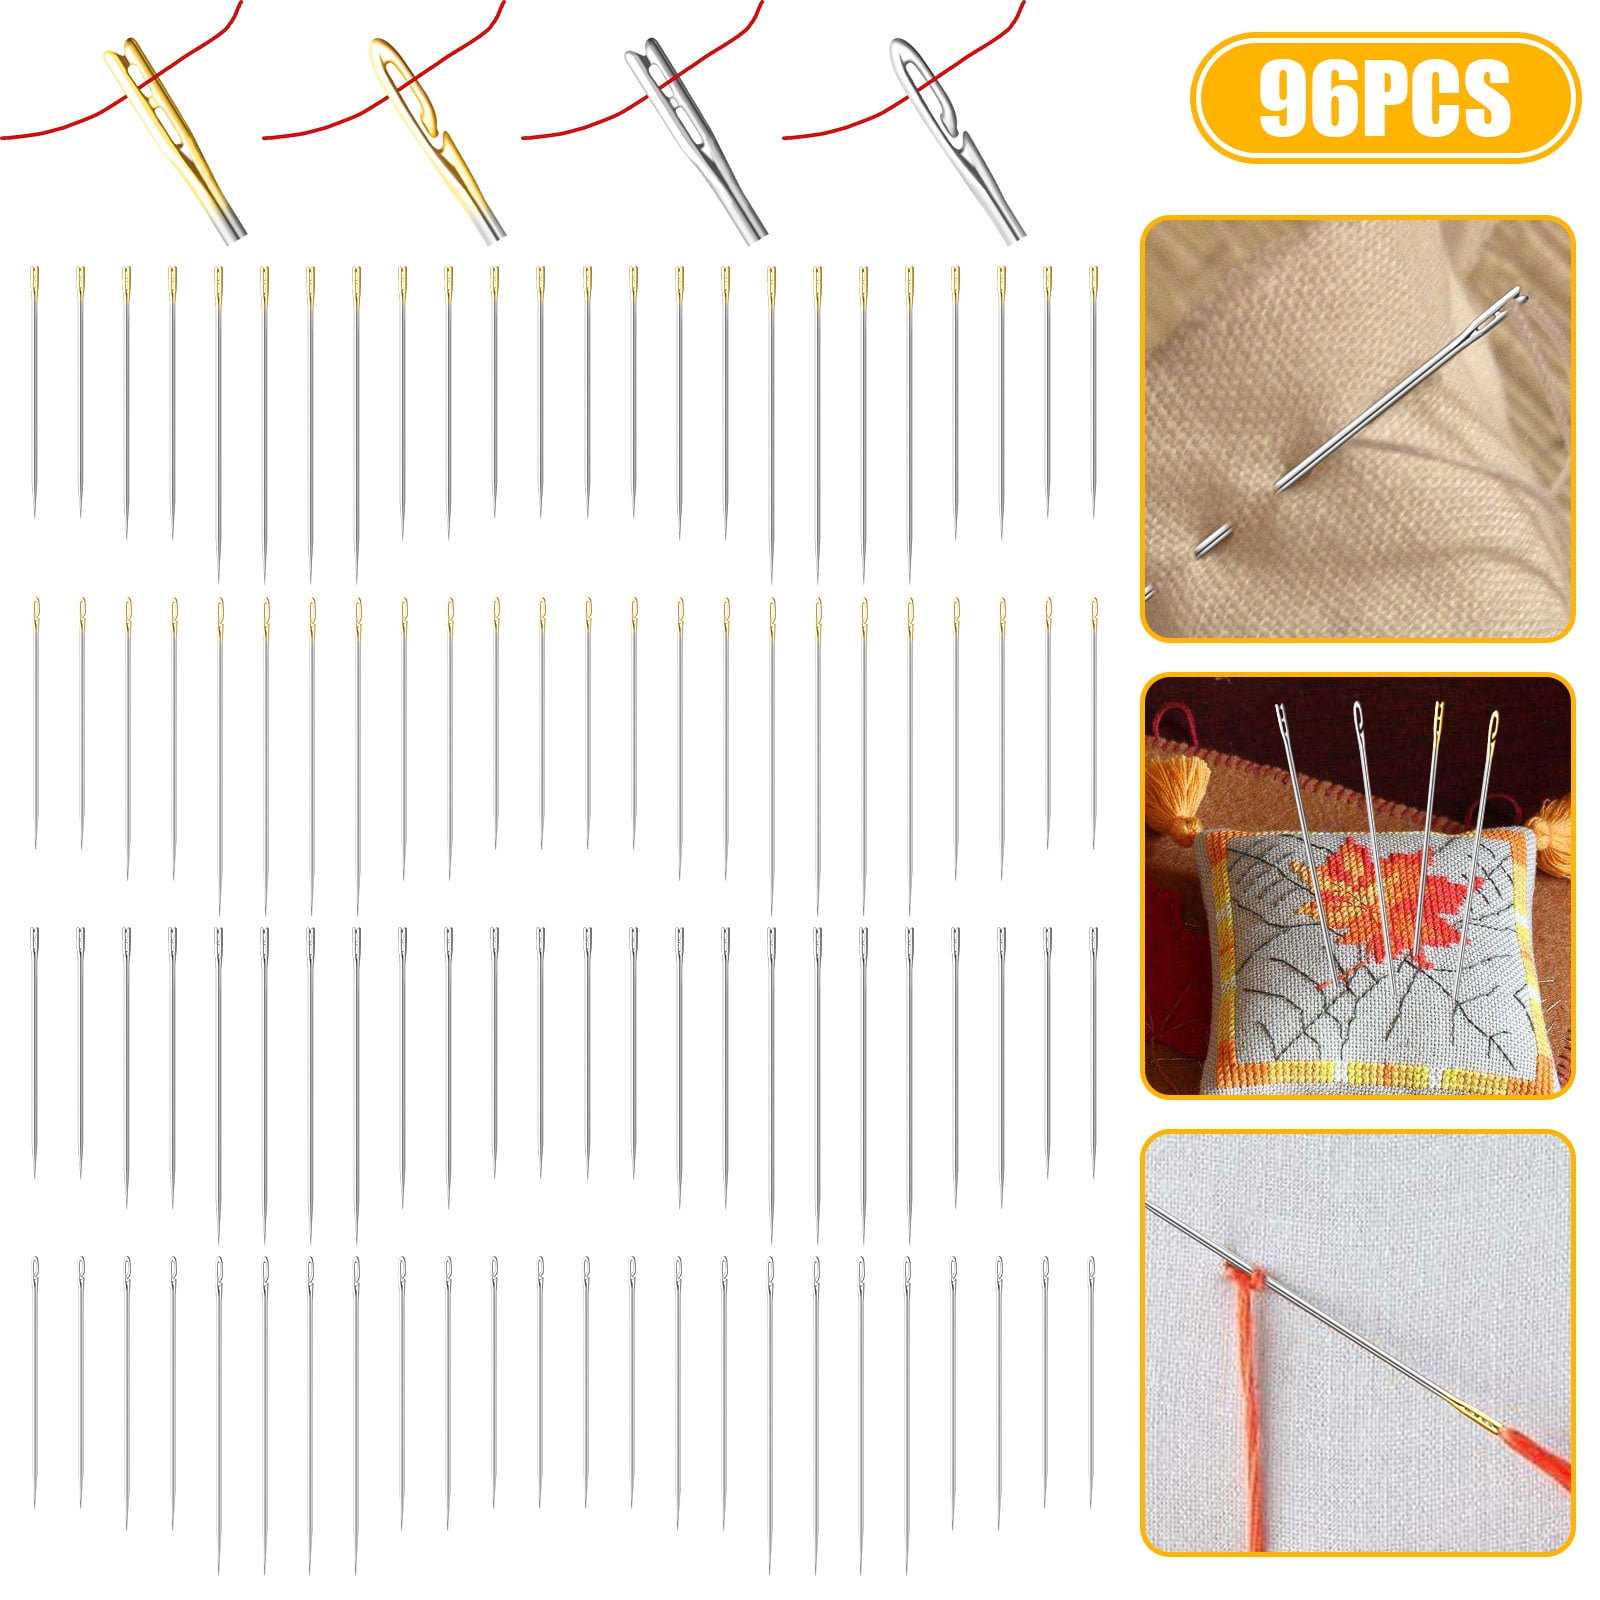 TSV 96pcs Self Threading Needles, One Second-Needles Big Eye